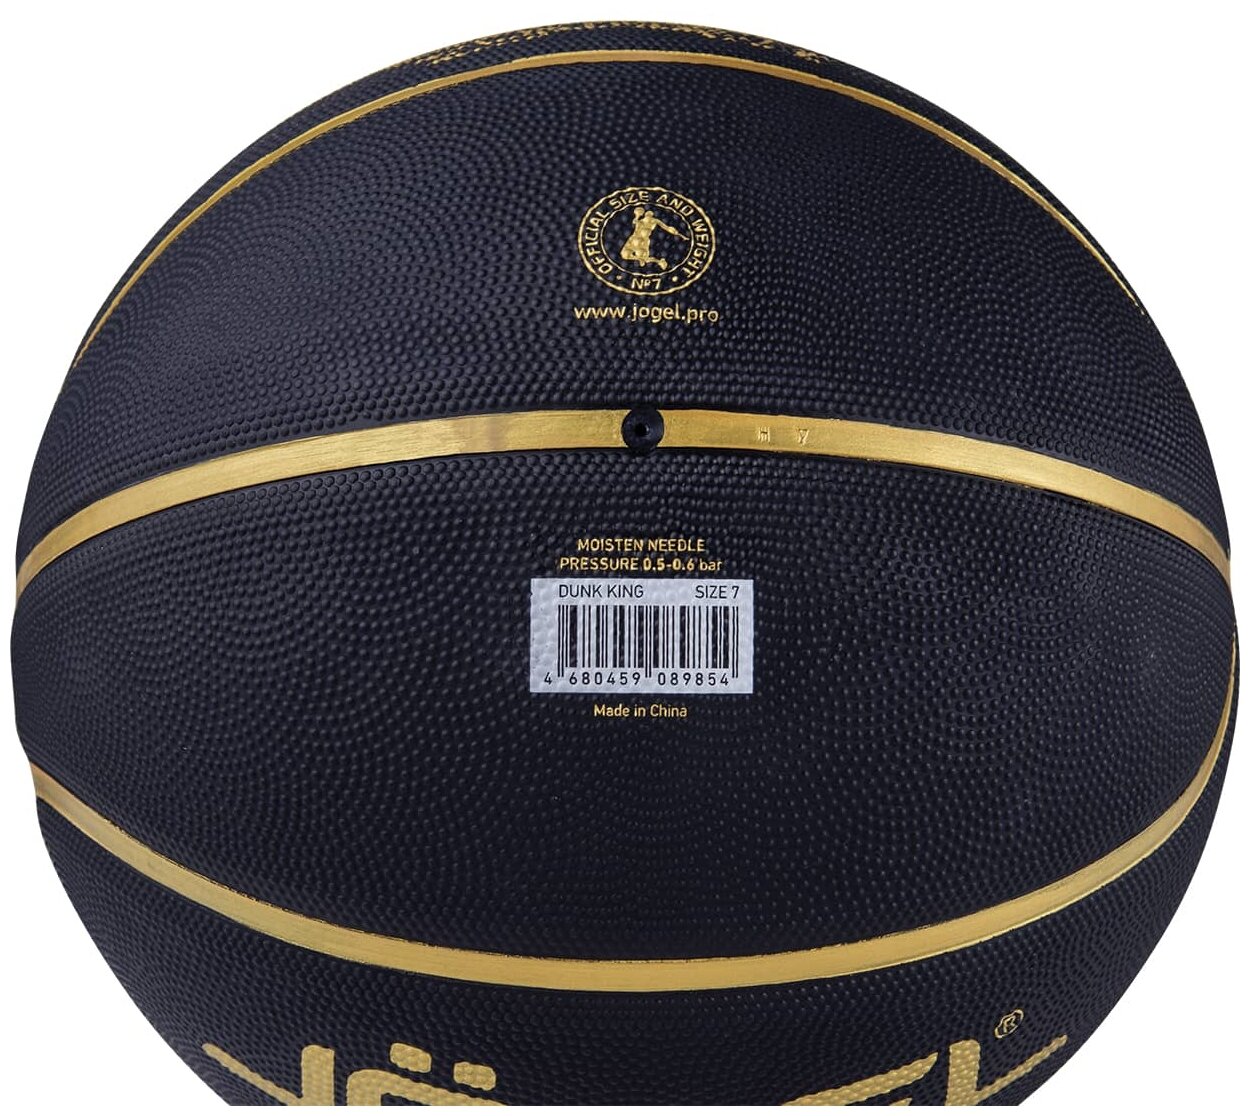 Баскетбольный мяч Jogel DUNK KING для уличного баскетбола, размер 7